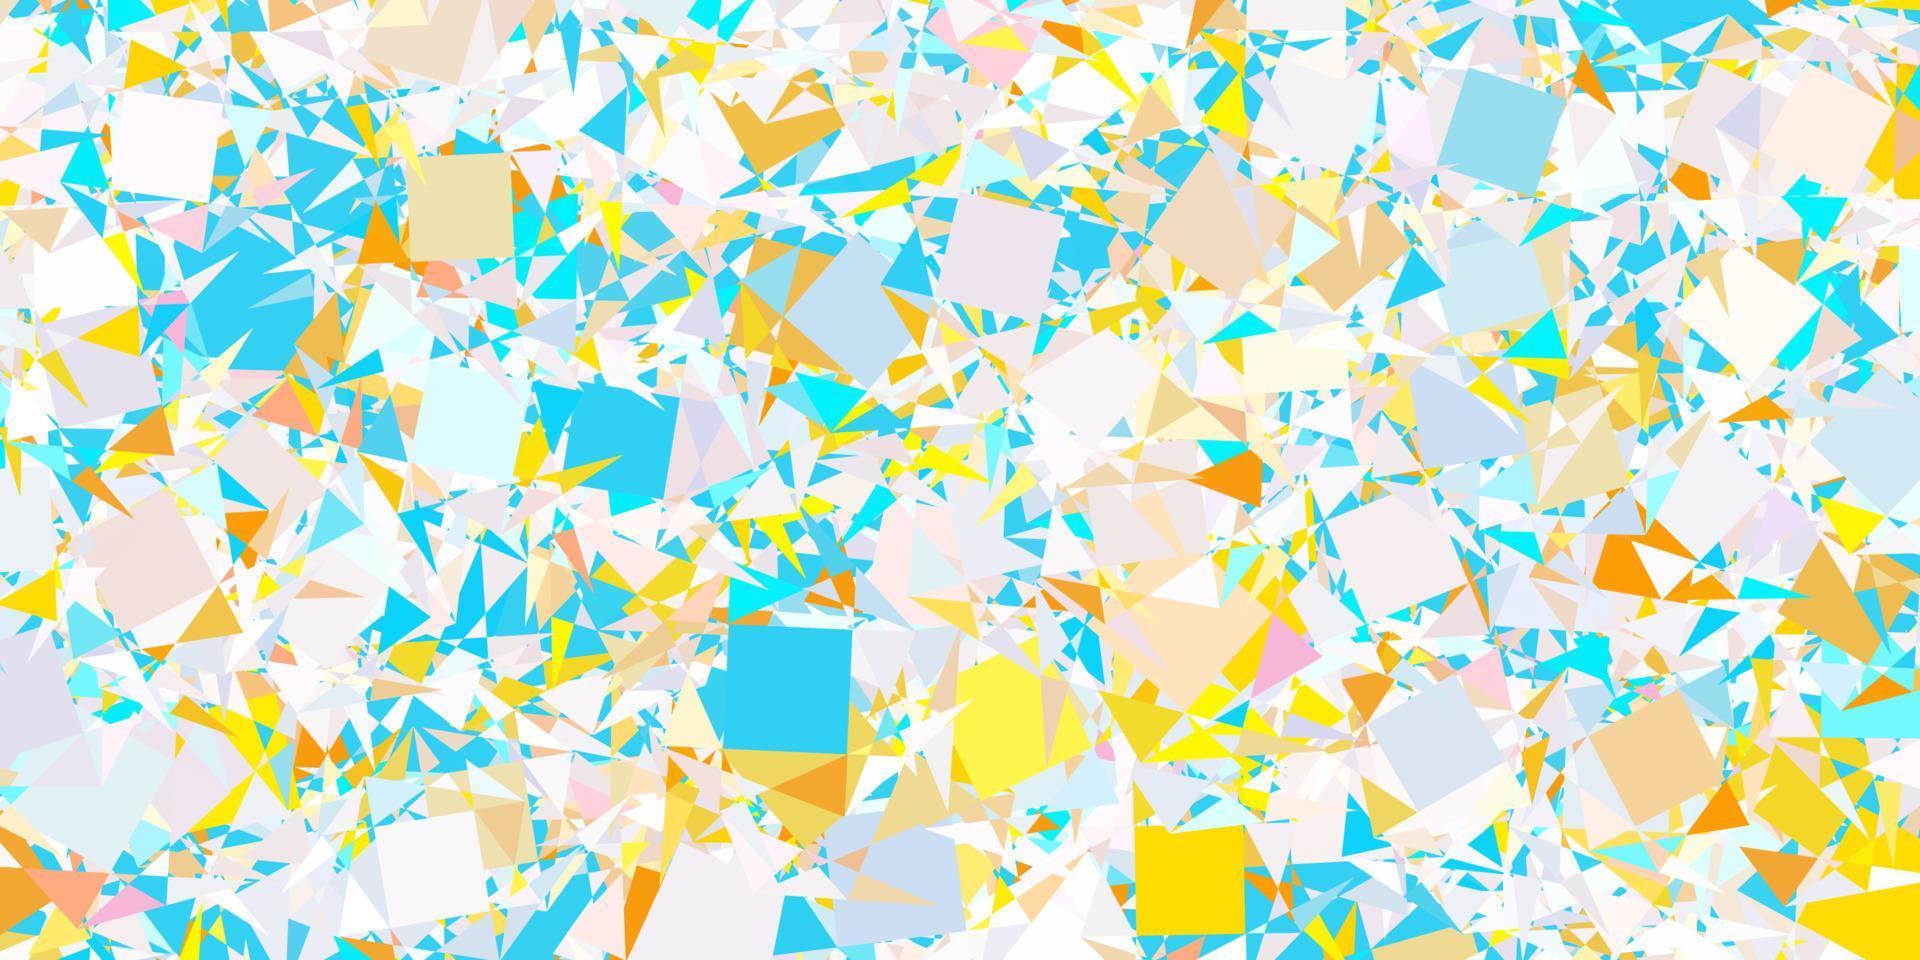 patrón de vector azul claro, amarillo con formas poligonales.